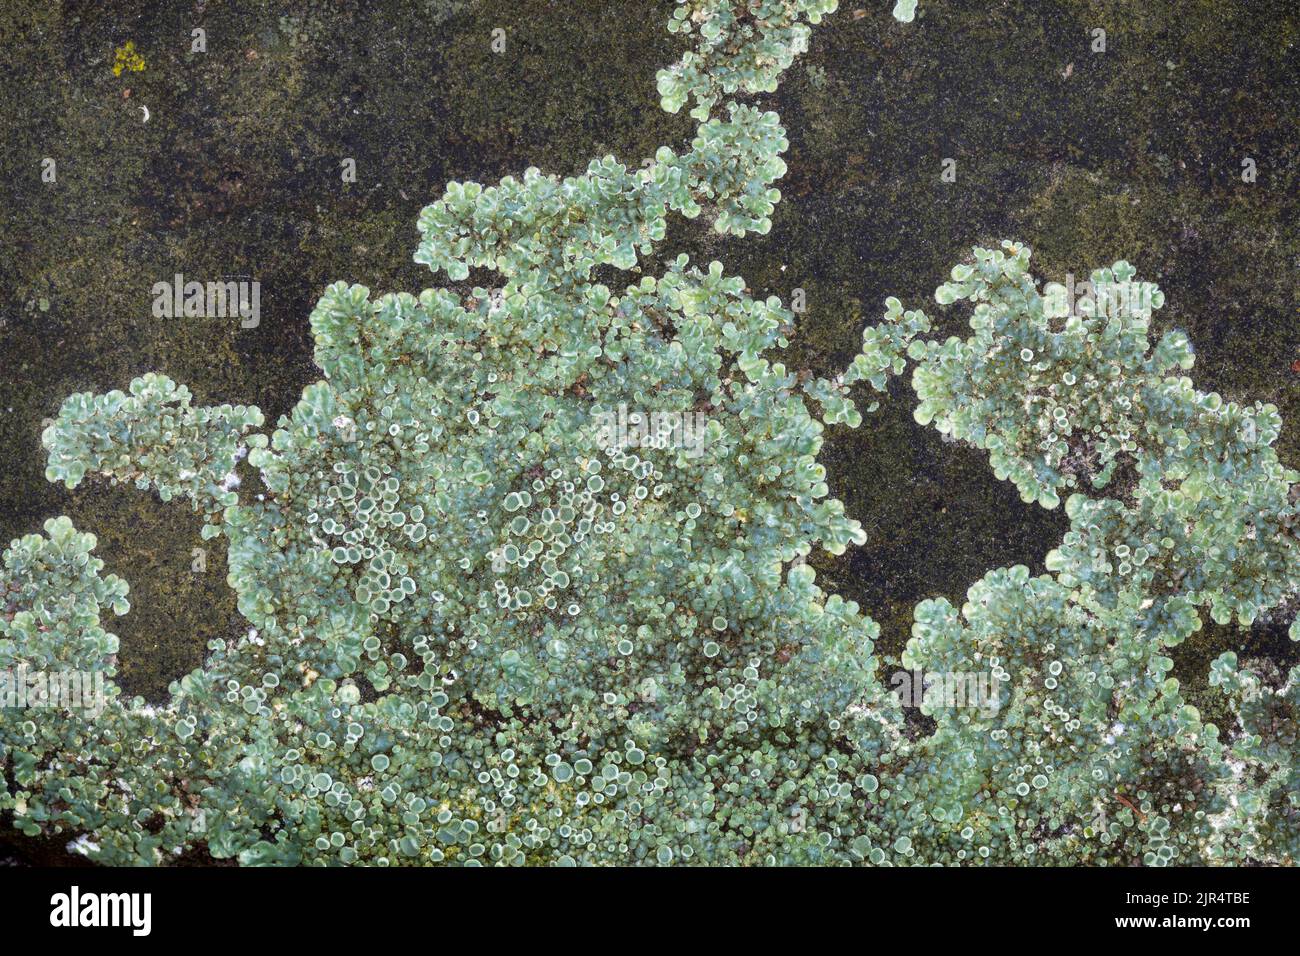 rim lichen (Lecanora muralis, Protoparmeliopsis muralis, Lecanora alboeffigurata, Lecanora albomarginata, Lecanora diffracta, Placolecanora muralis), Stock Photo